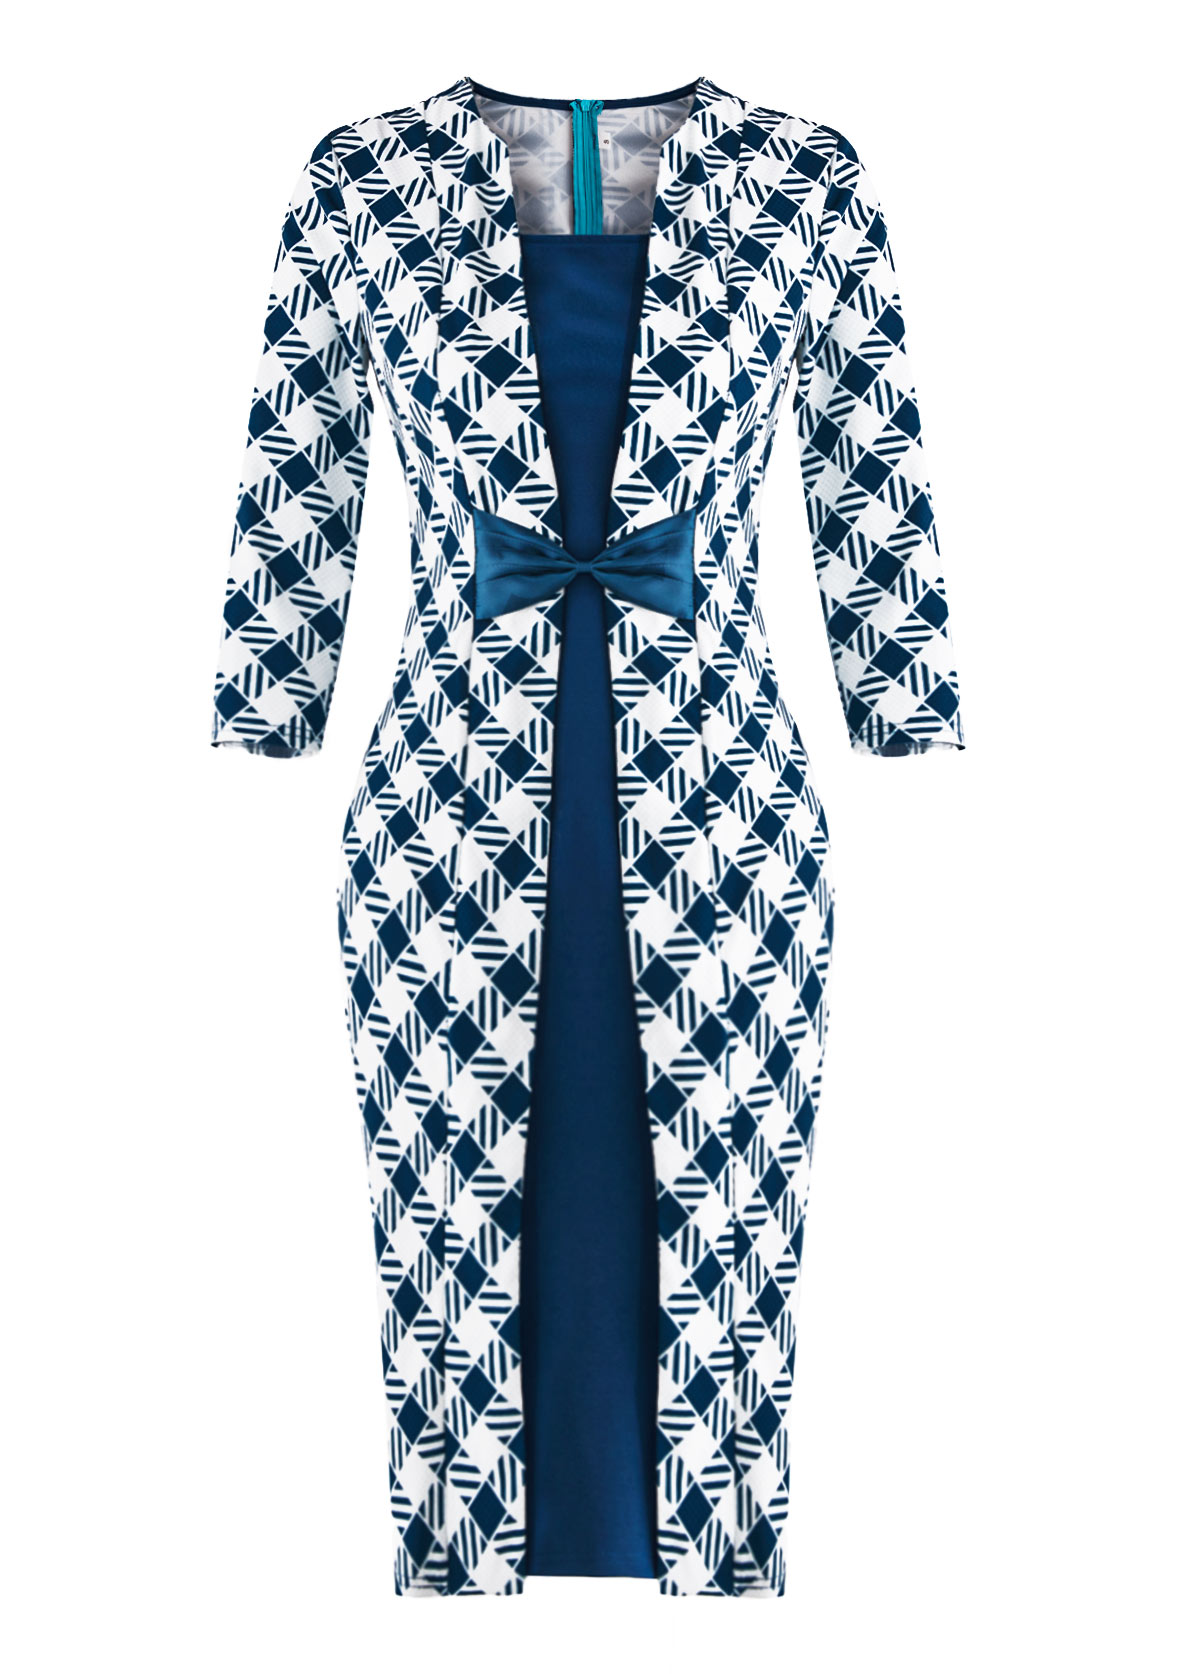 Plaid Patchwork Blue Three Quarter Length Sleeve Dress